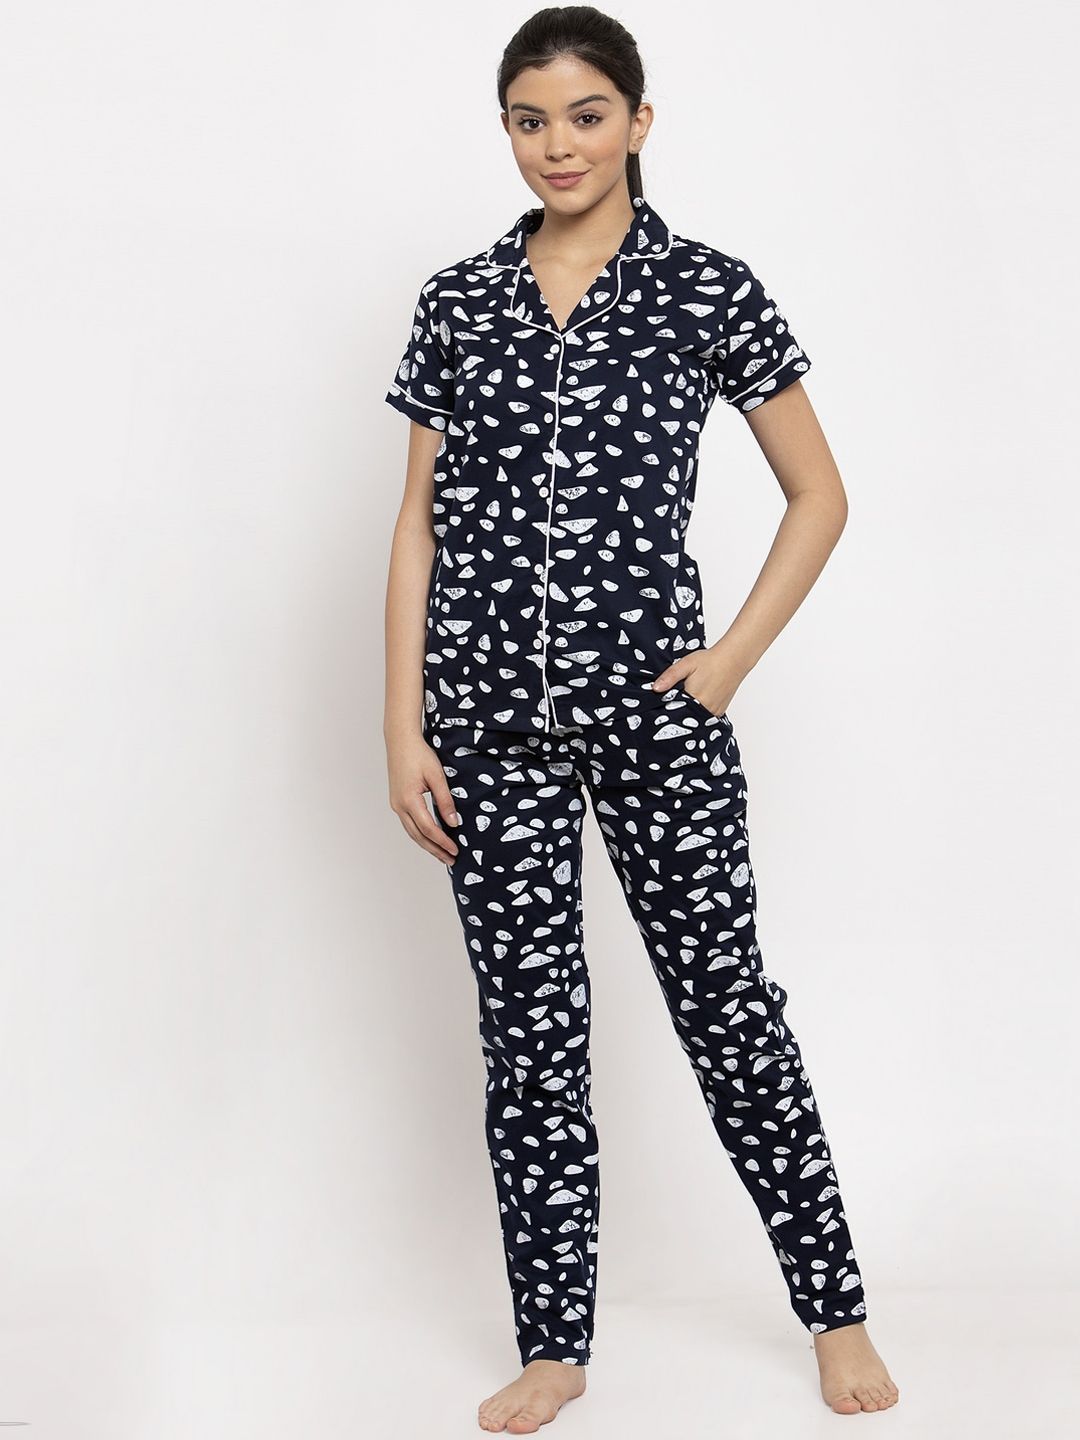 Claura Women Navy Blue & White Printed Shirt & Pyjama Set Price in India